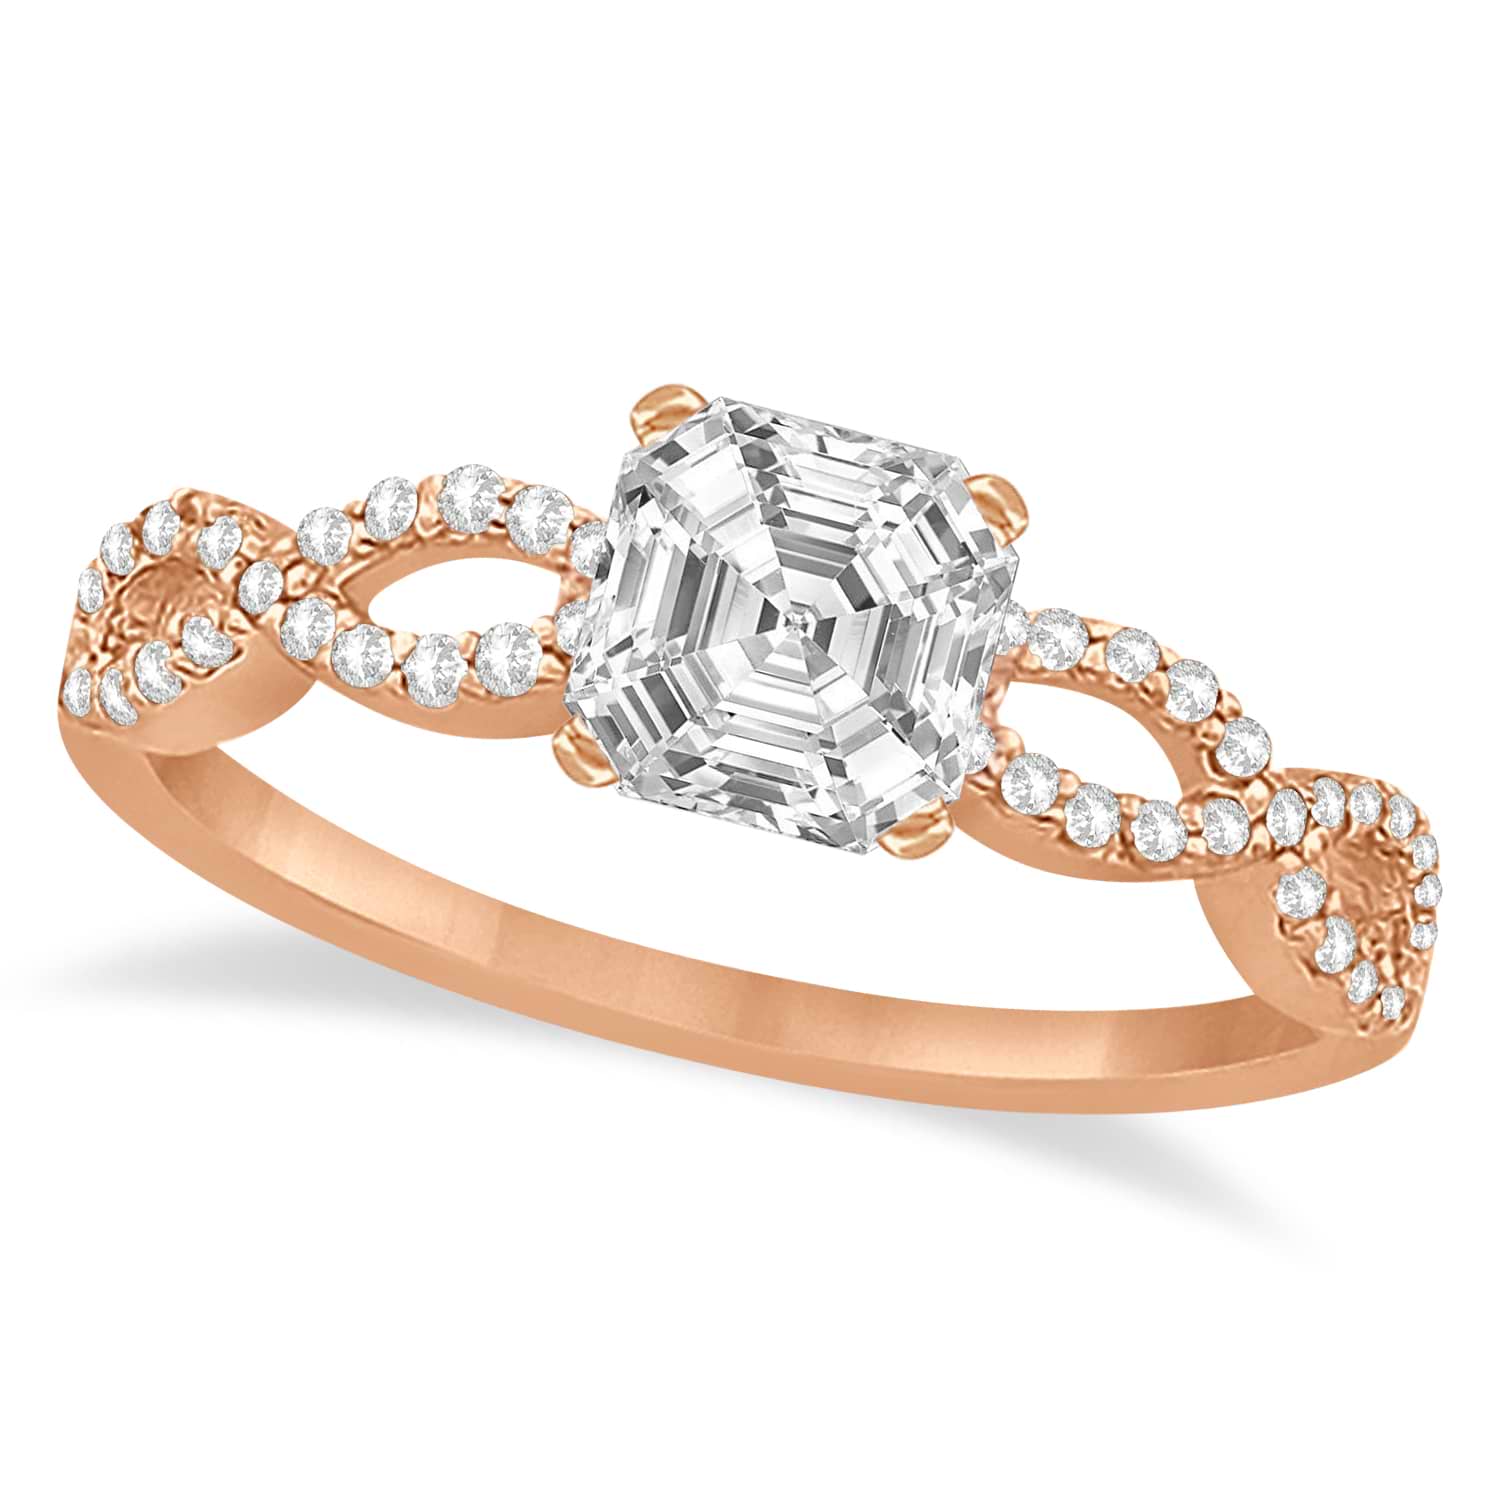 Infinity Asscher-Cut Lab Grown Diamond Engagement Ring 14k Rose Gold (0.75ct)